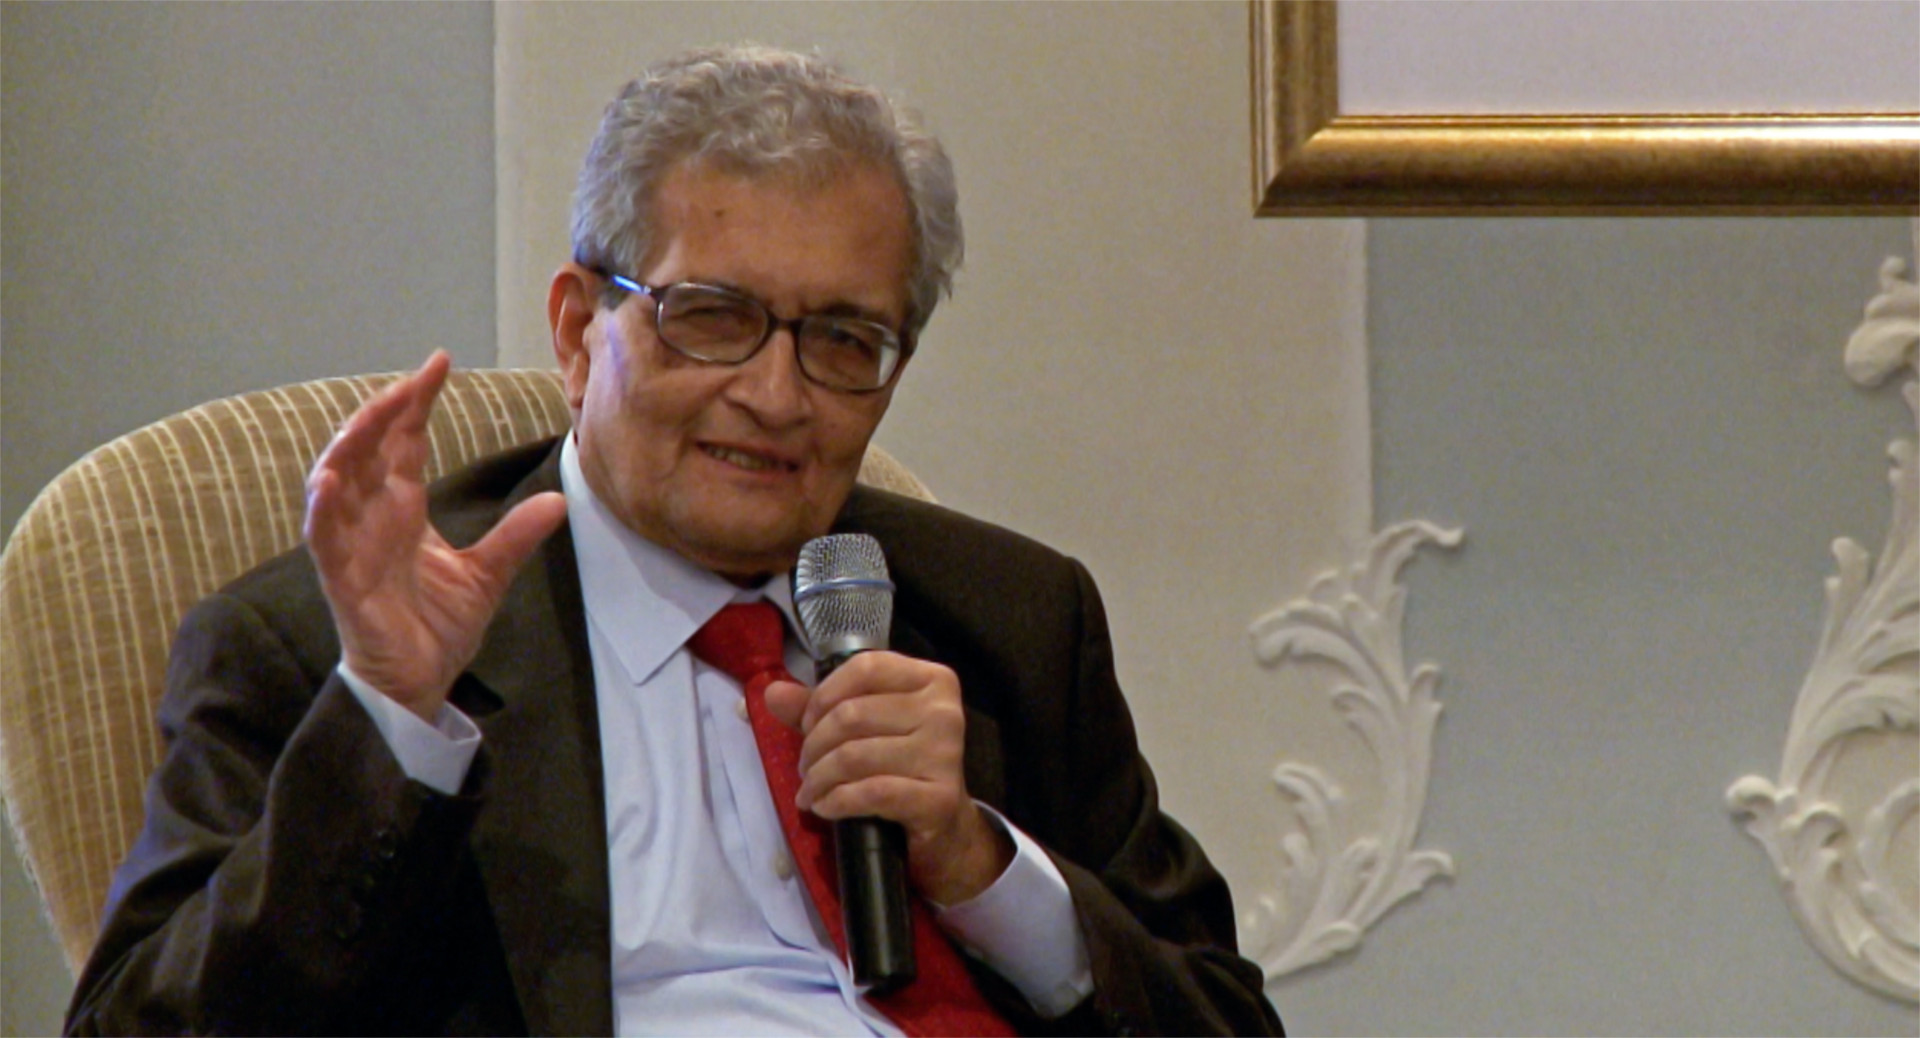 Disparity Film Still, Amartya Sen speaking with microphone